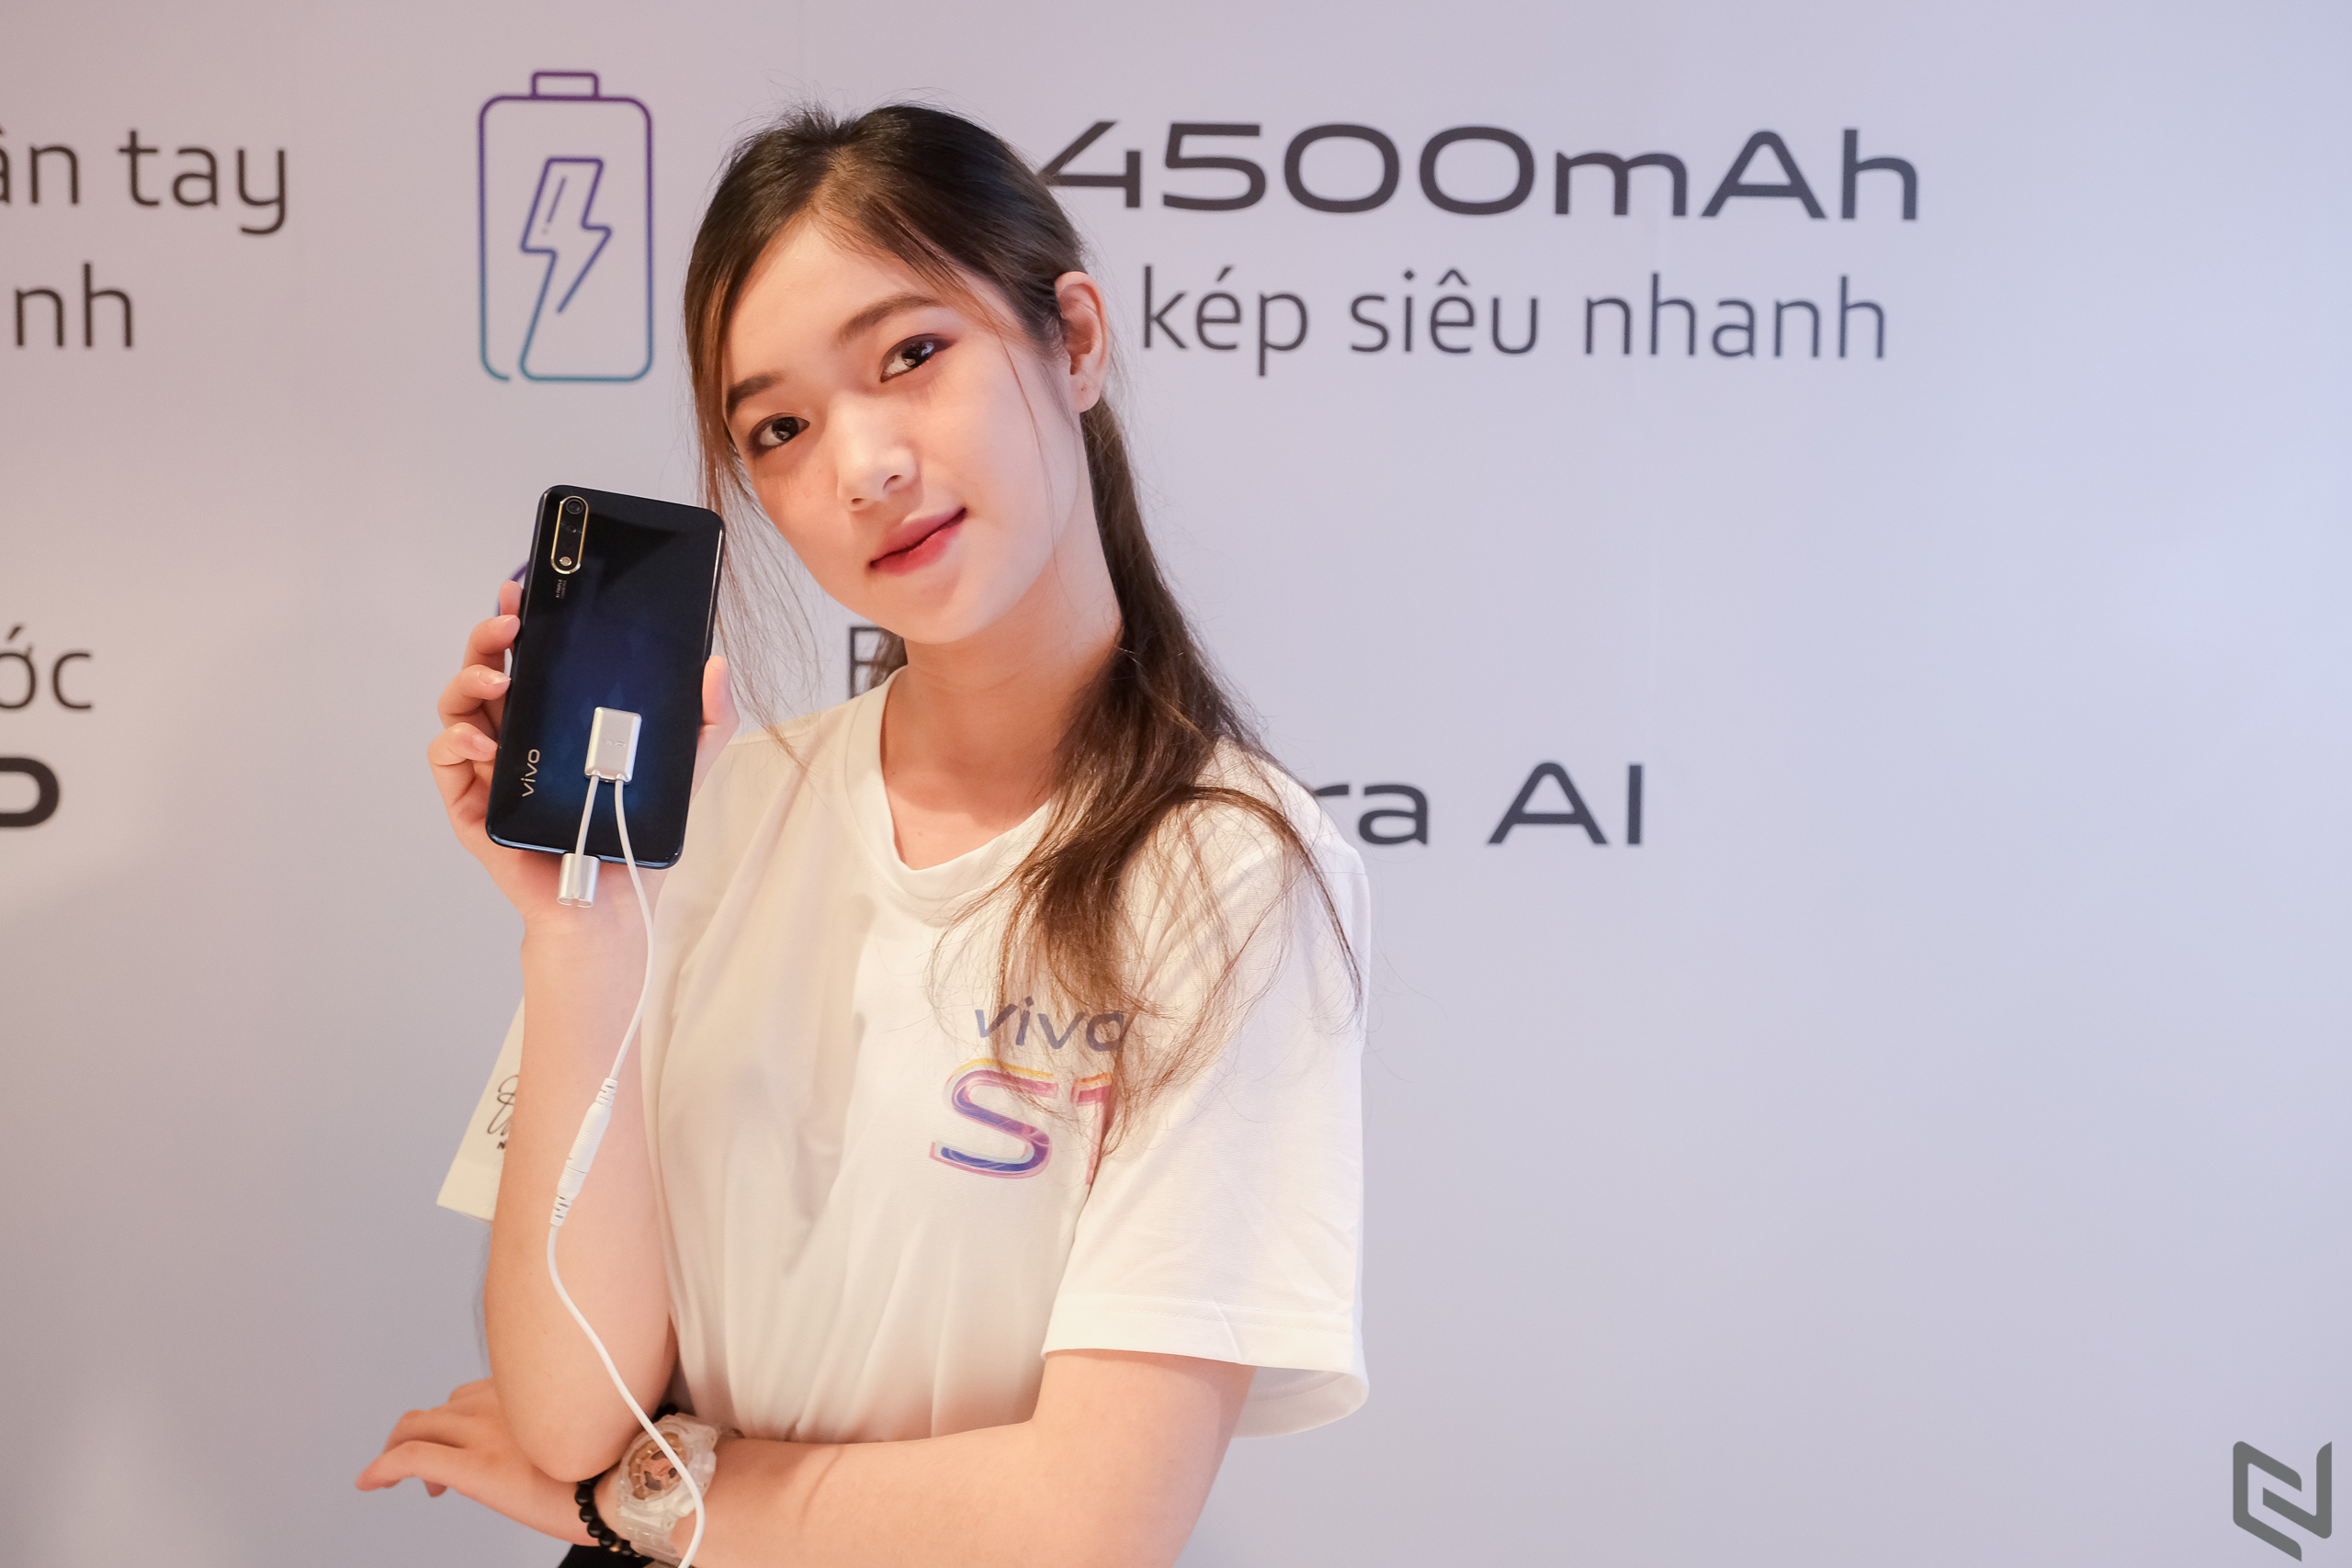 Vivo S1 chính thức ra mắt tại Việt Nam, cảm biến vân tay dưới màn hình, camera selfie AI 32MP, giá 7 triệu